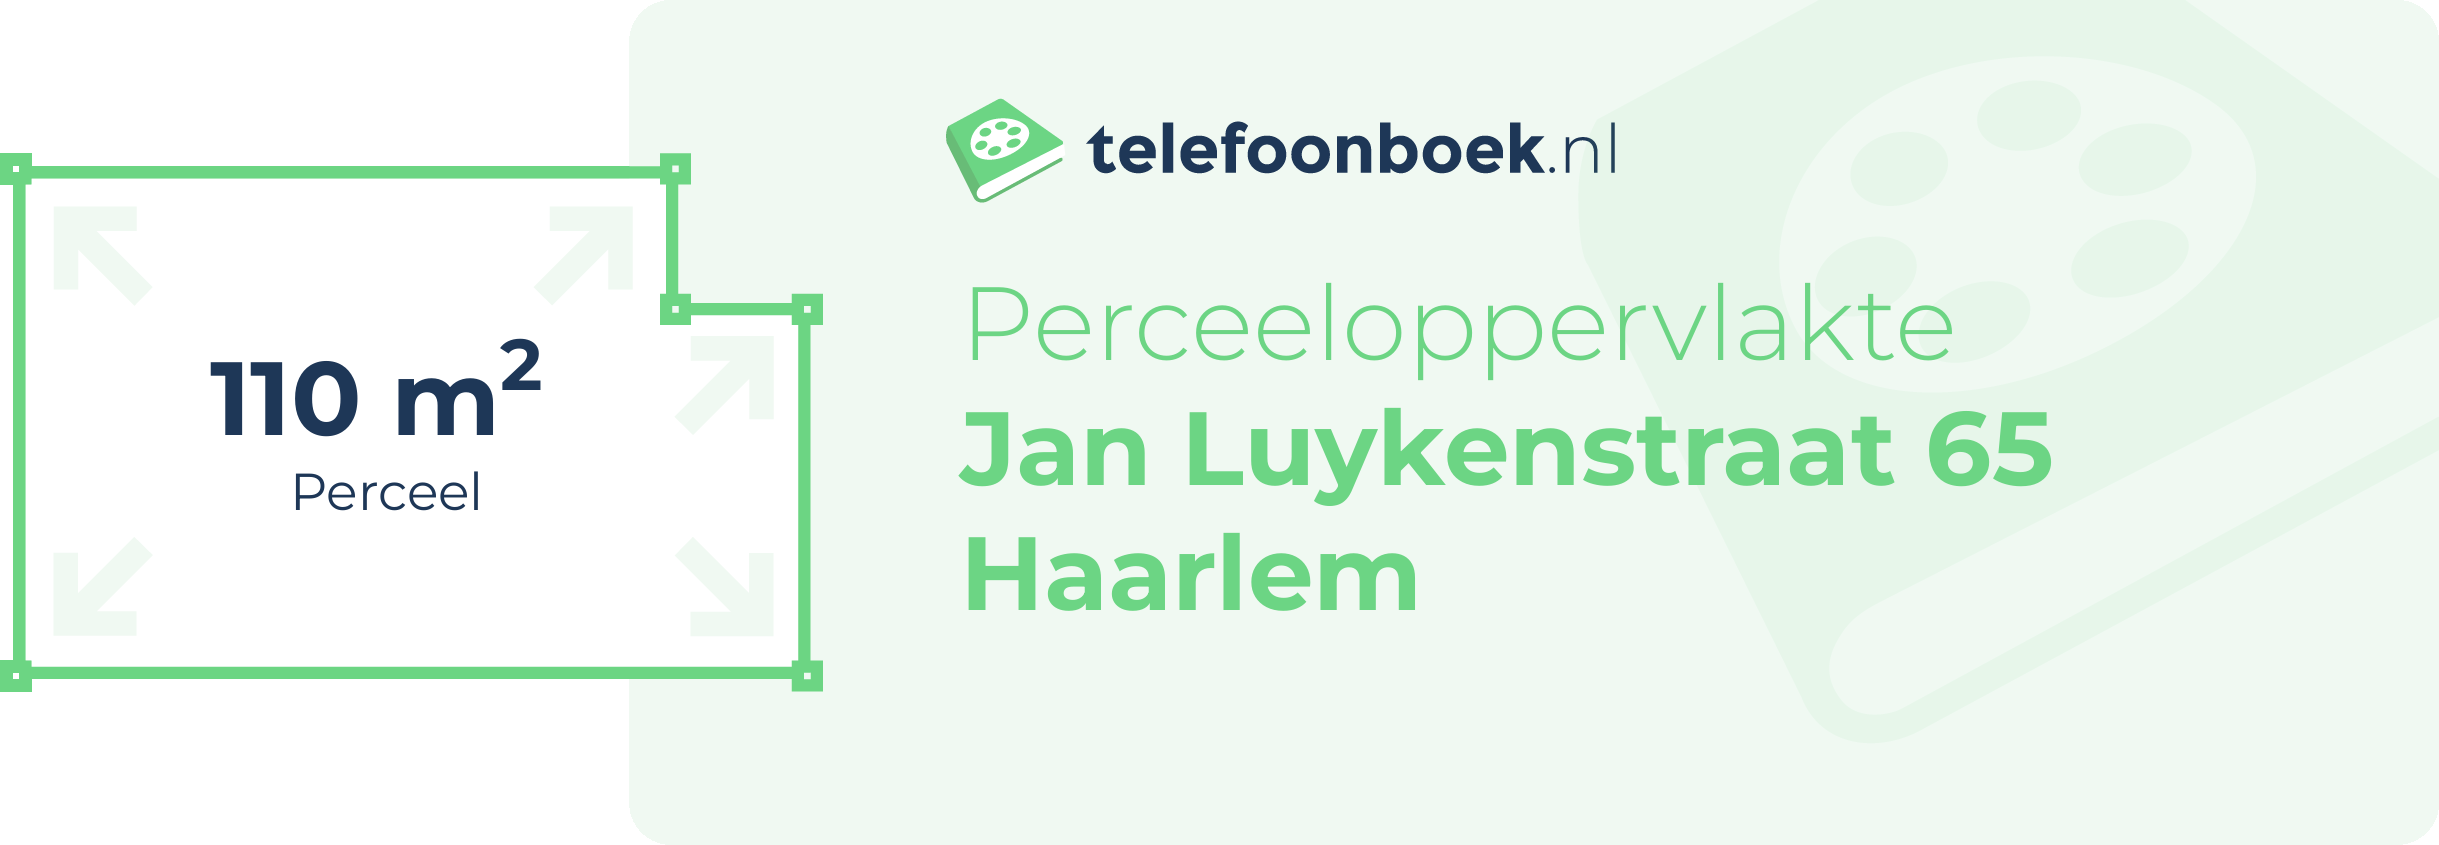 Perceeloppervlakte Jan Luykenstraat 65 Haarlem